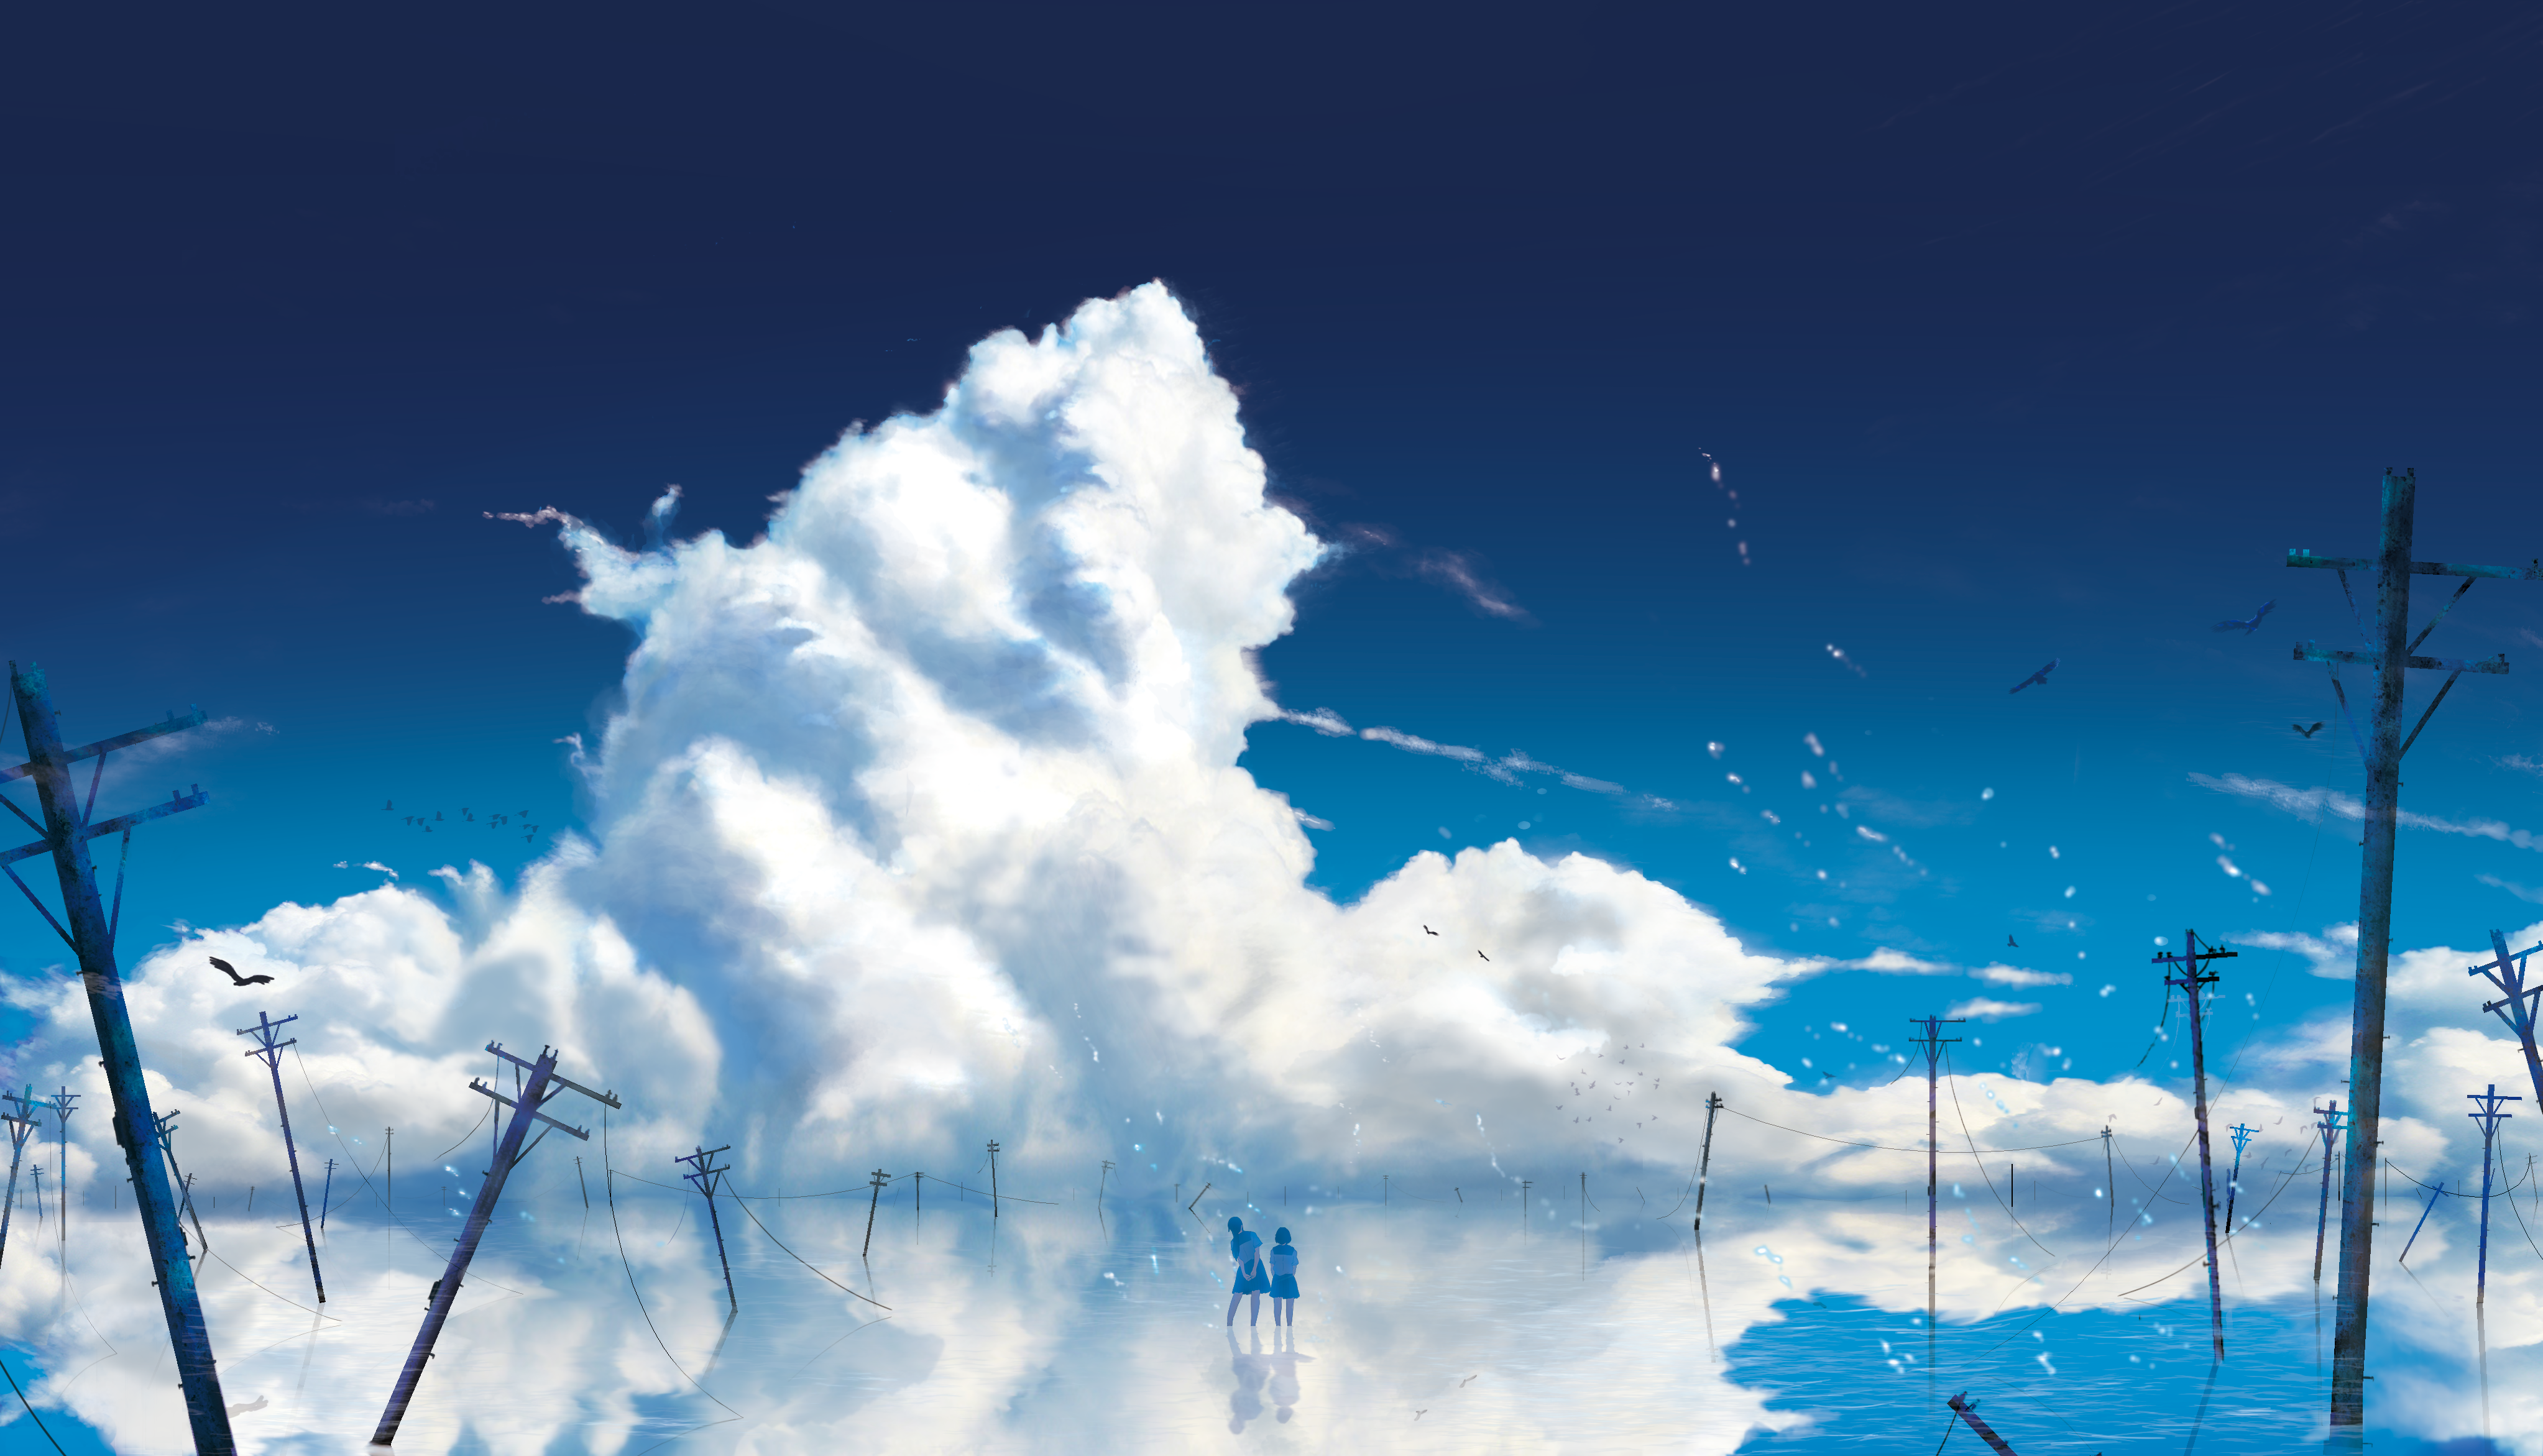 Anime Sky Wallpaper 4k - Anime Wallpaper HD